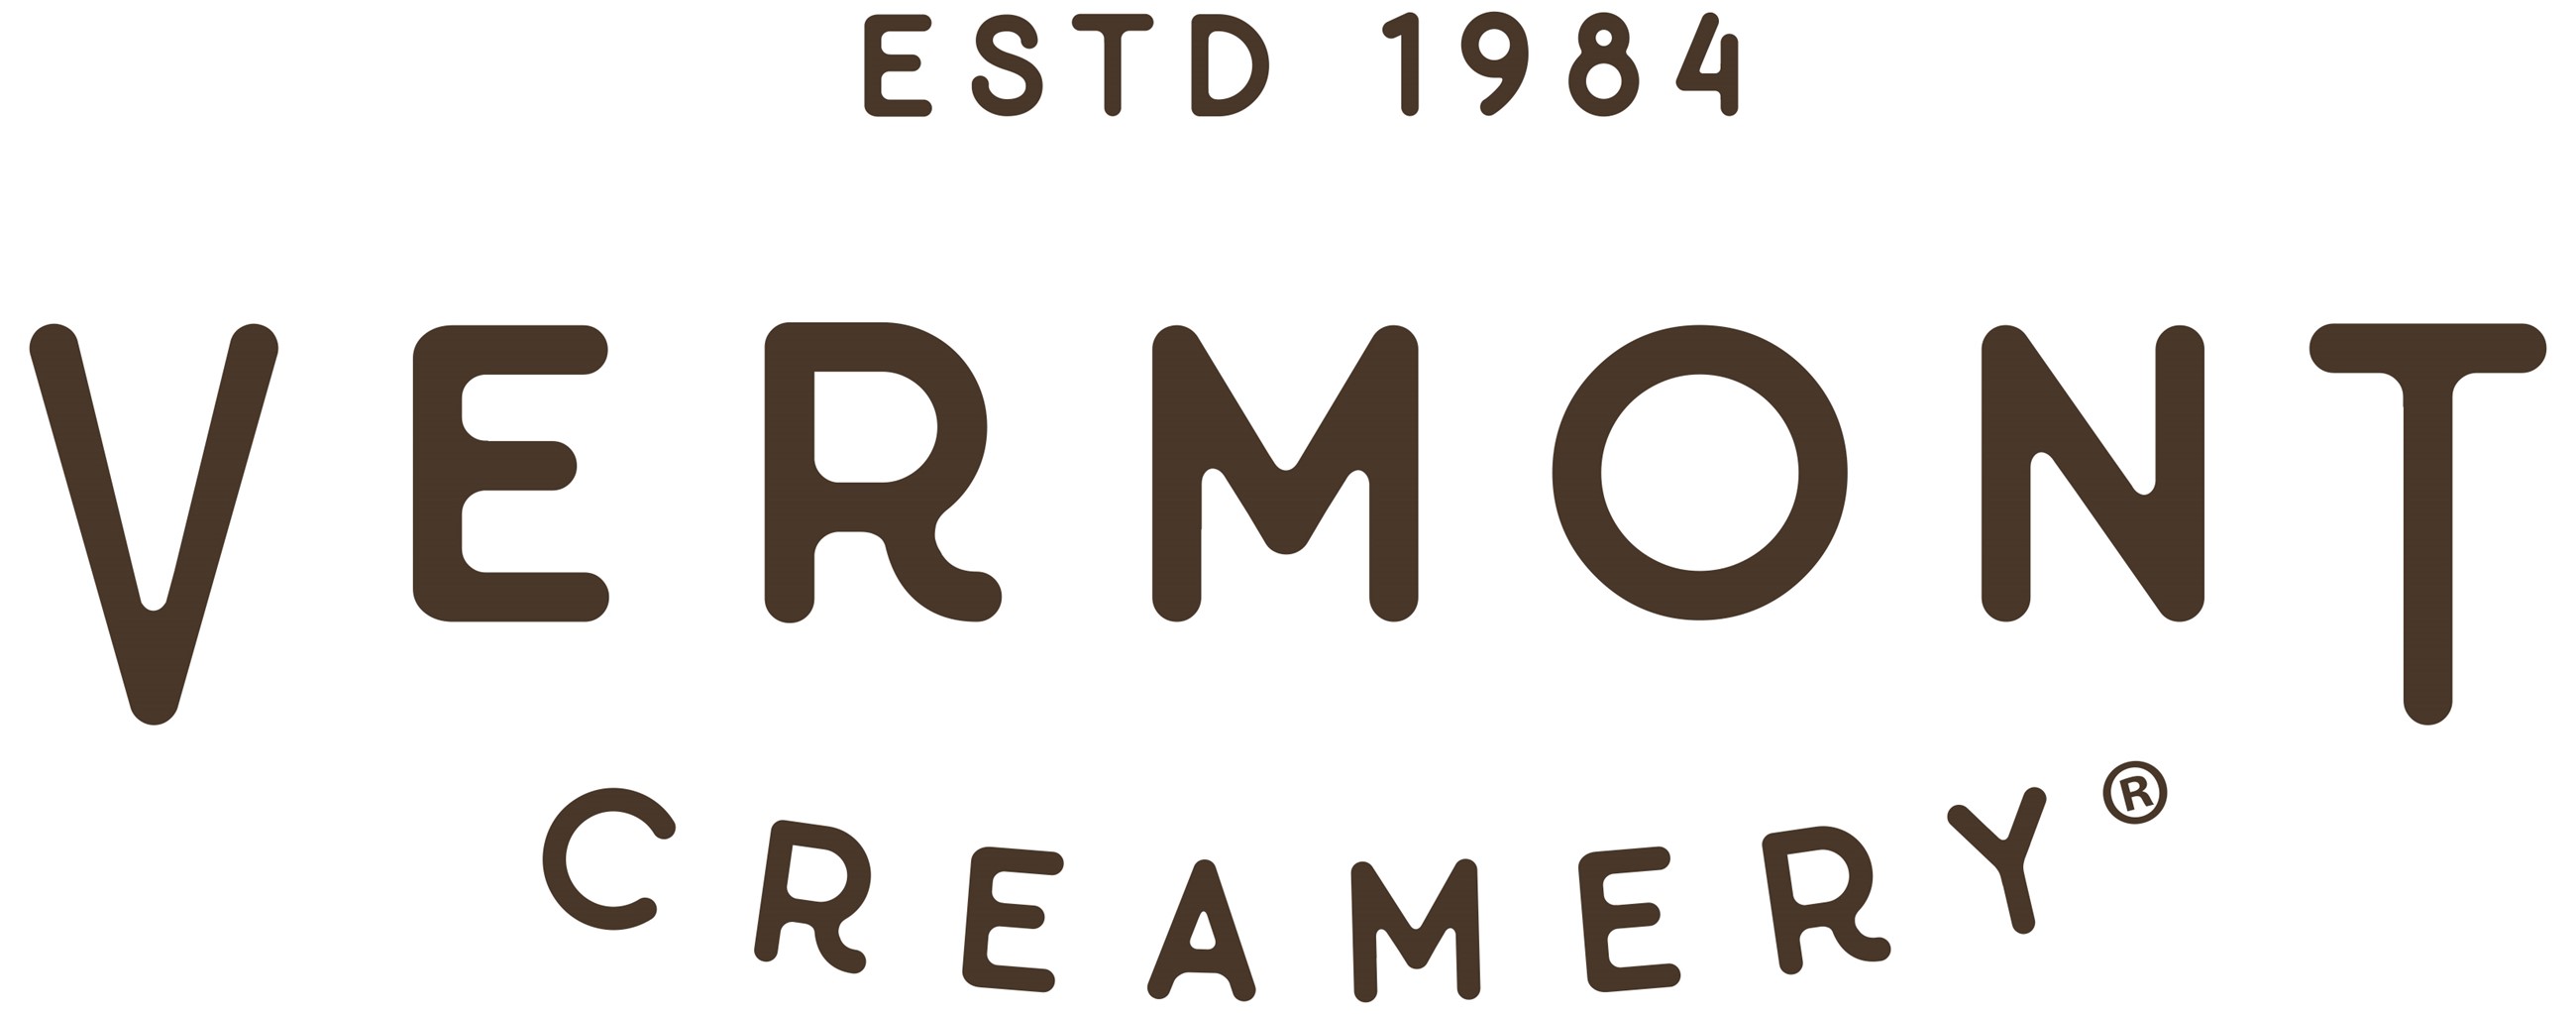 Vermont Creamery Opens in new window